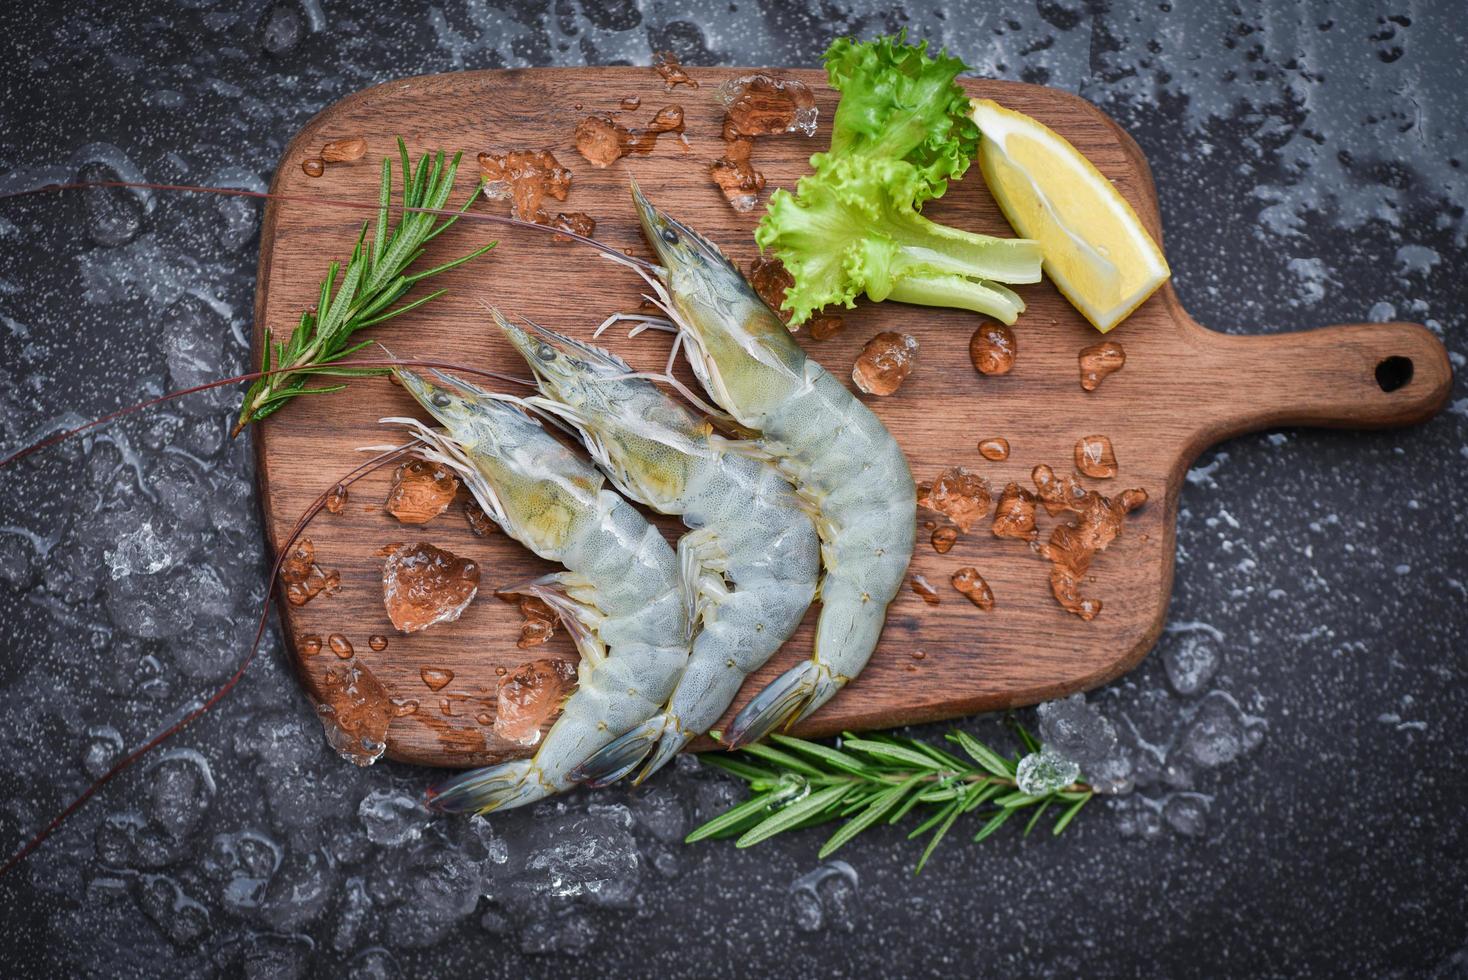 crevettes fraîches sur une planche à découper en bois avec des ingrédients de romarin herbes et épices pour la cuisson des fruits de mer crevettes crues crevettes sur glace congelées au restaurant de fruits de mer photo